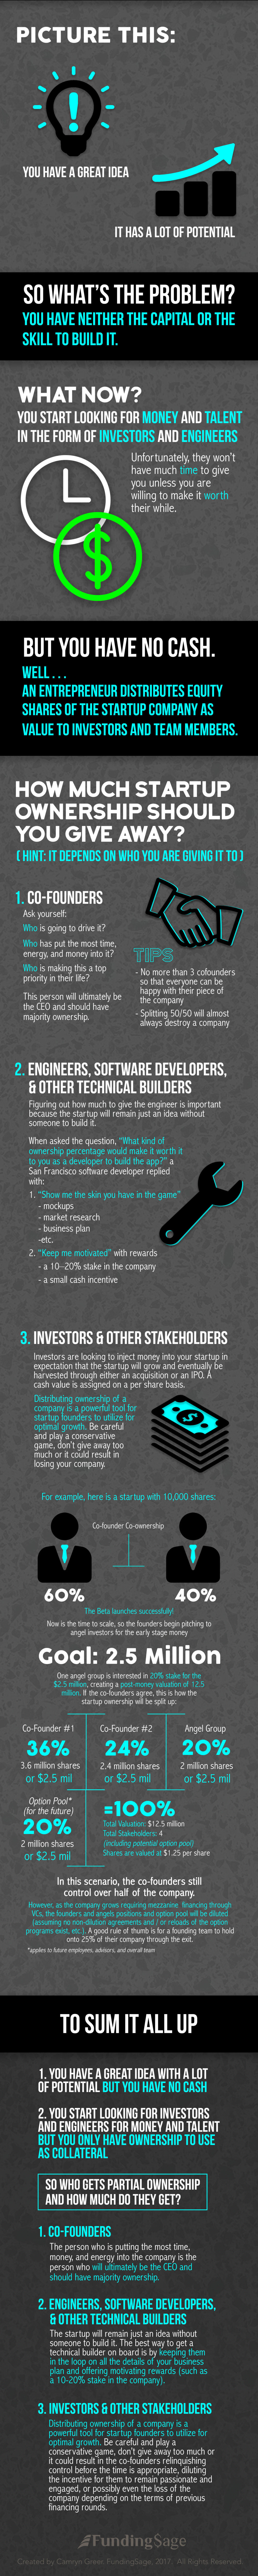 Startup Ownership